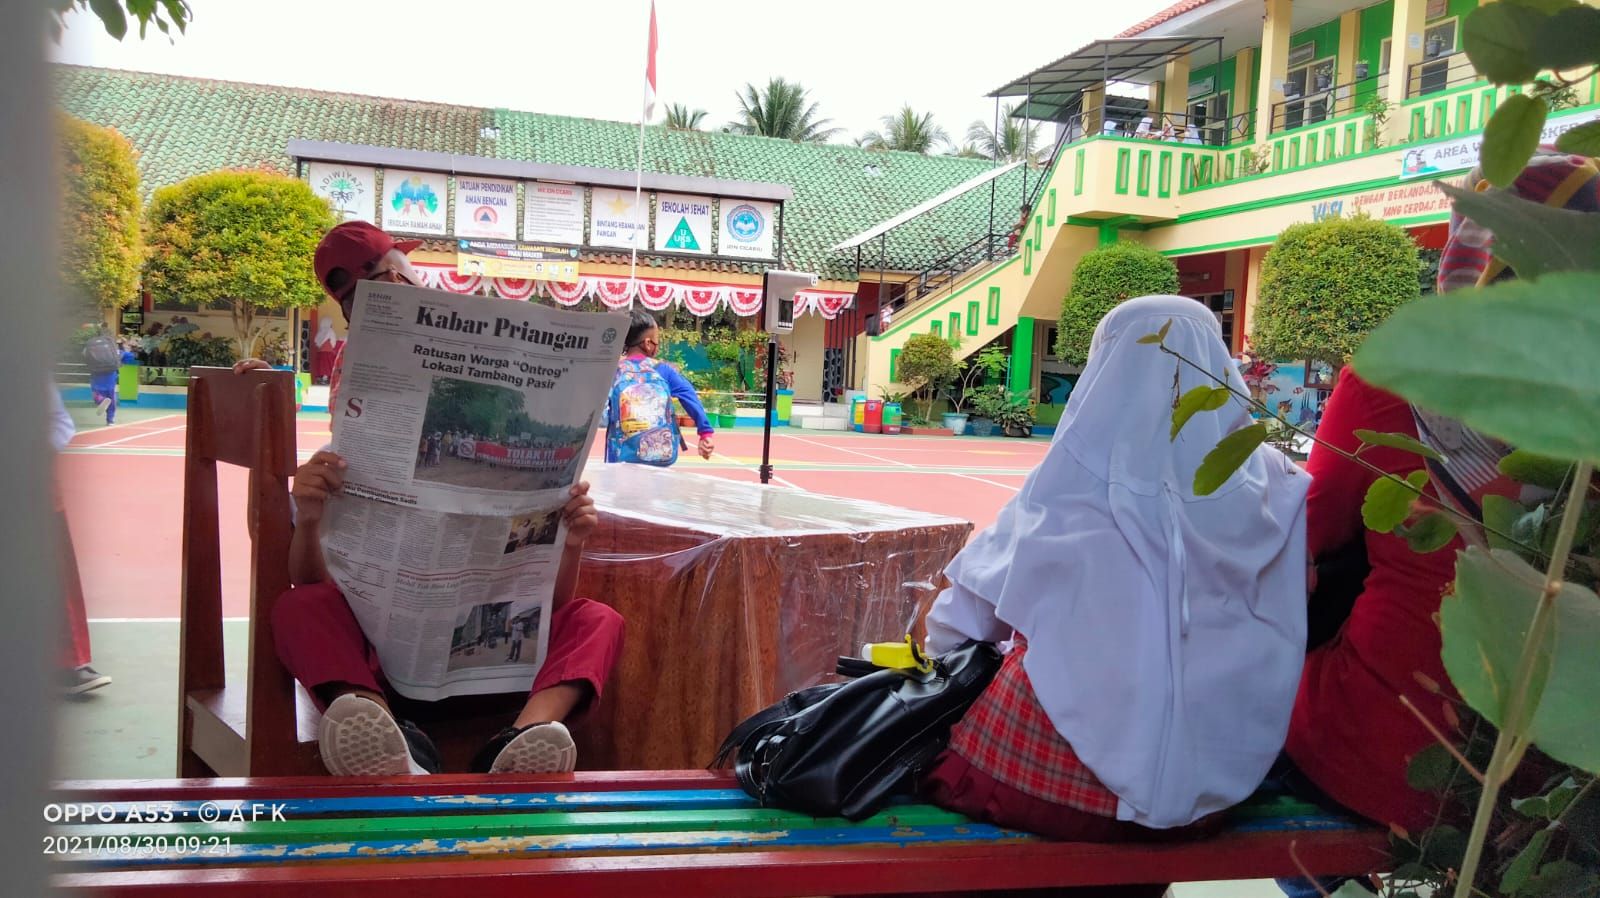 Seorang siswa SD di Kota Tasikmalaya asyik membaca Harian Umum Kabar Priangan saat jam istirahat belajar, 30 Agustus 2021.*/kabar-priangan.com/Arief Farihan Kamil